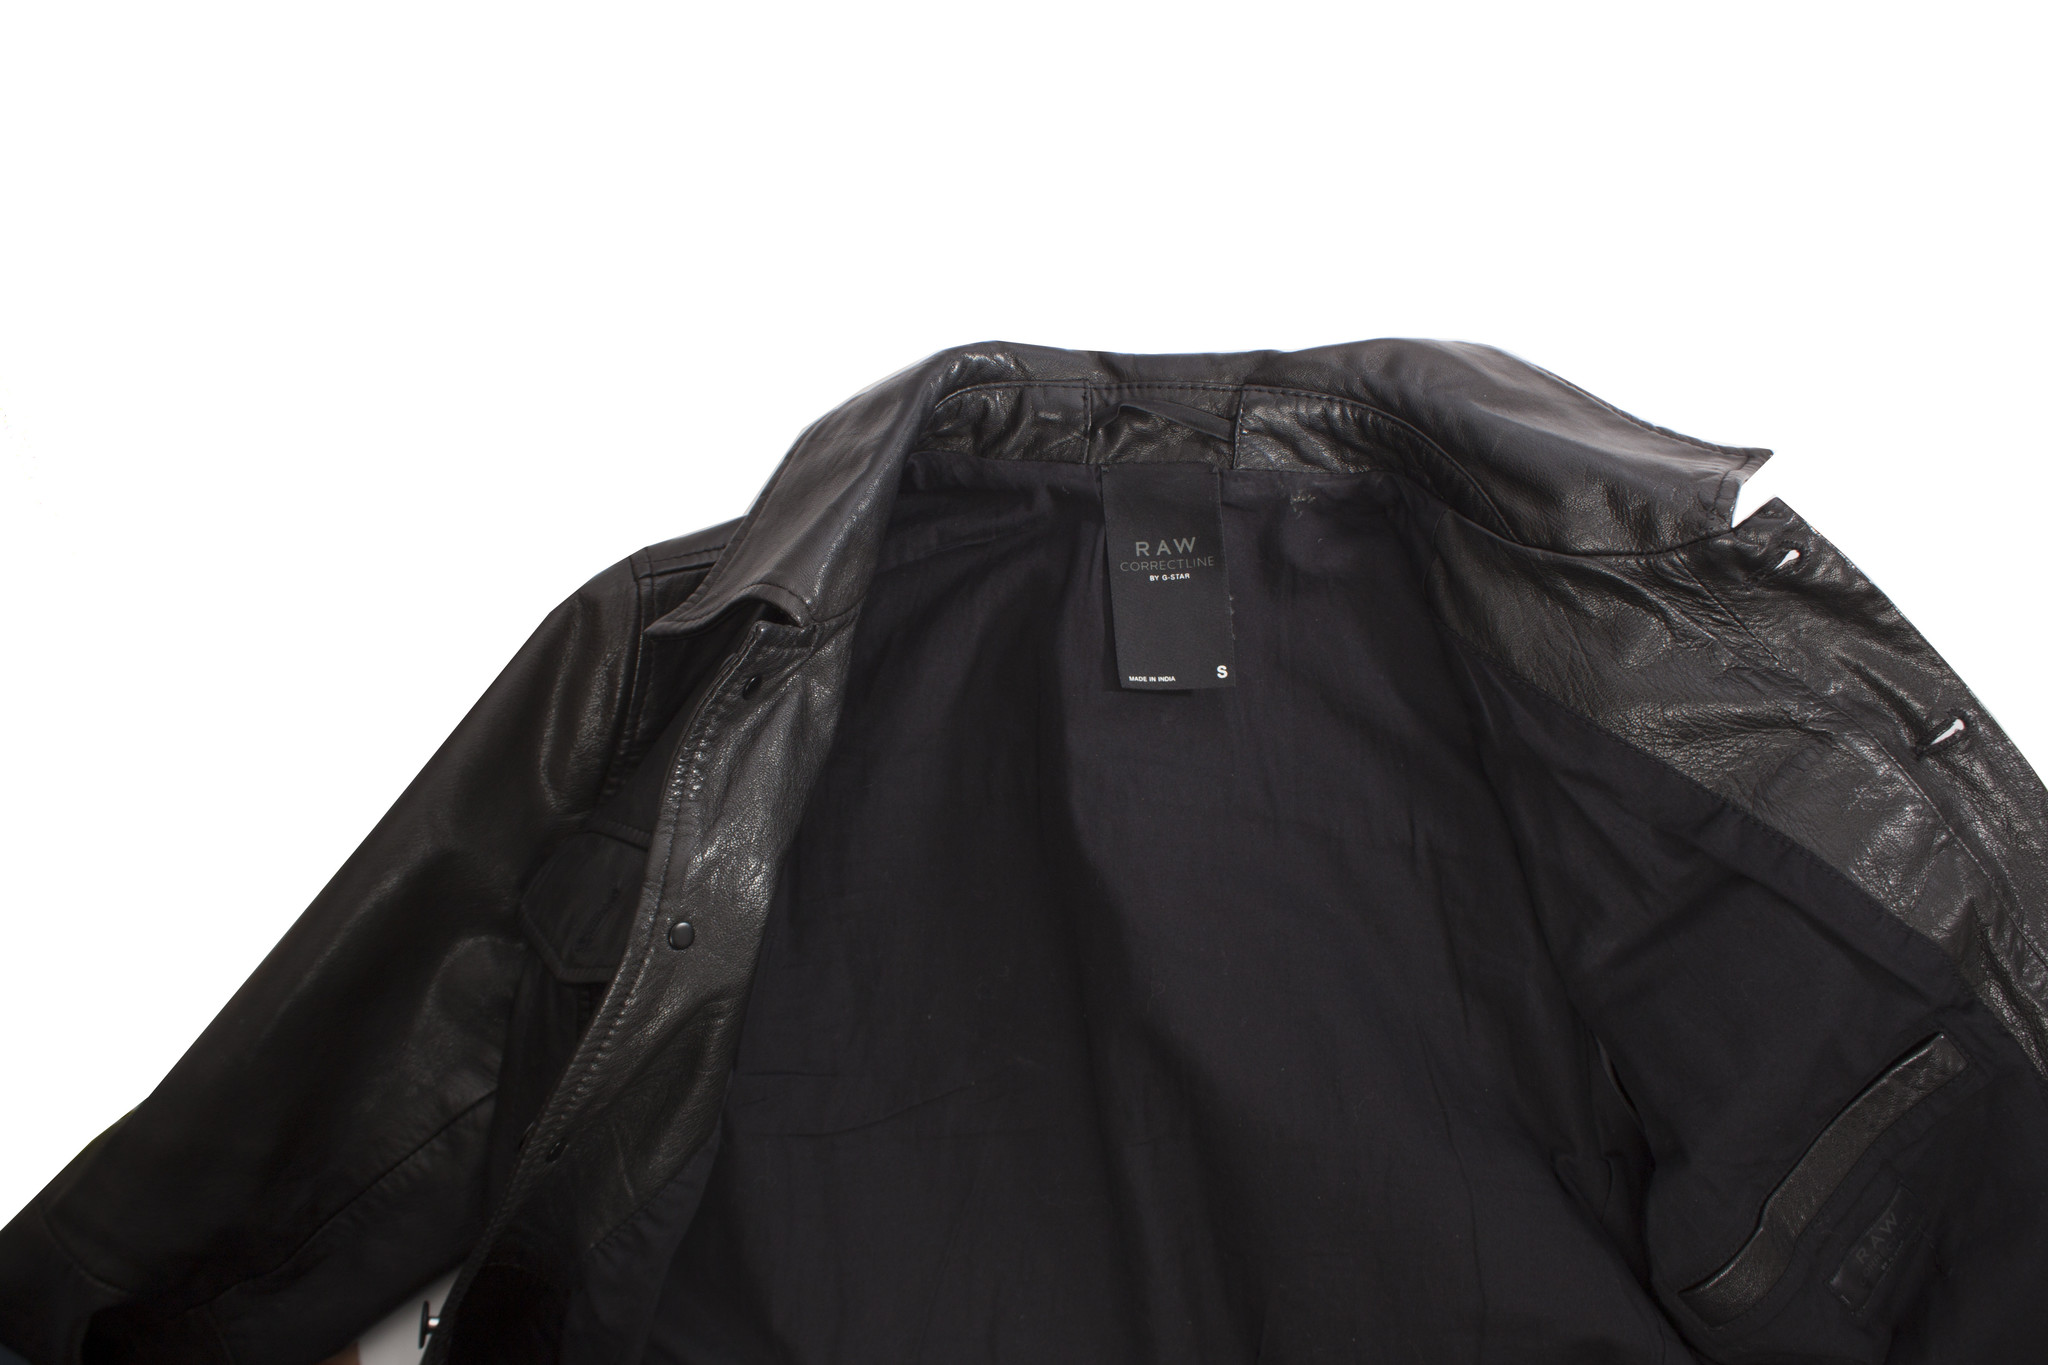 Licht Initiatief begroting G-star Raw, zwart lederen jas in maat S. - Unique Designer Pieces